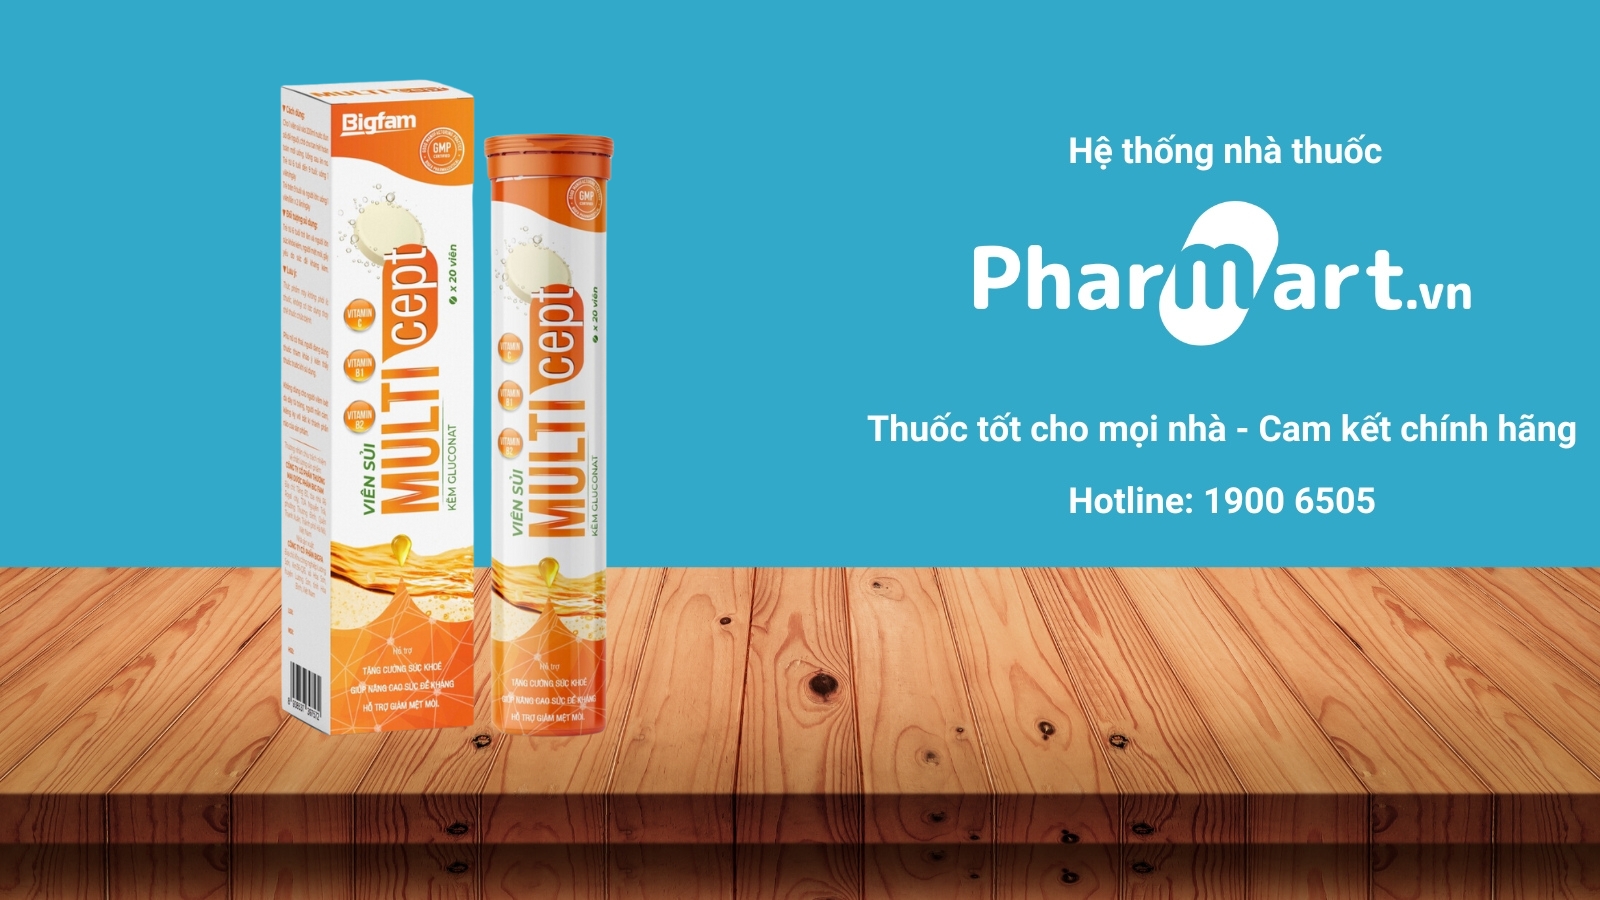 Mua ngay Viên sủi Multicept chính hãng tại Pharmart.vn